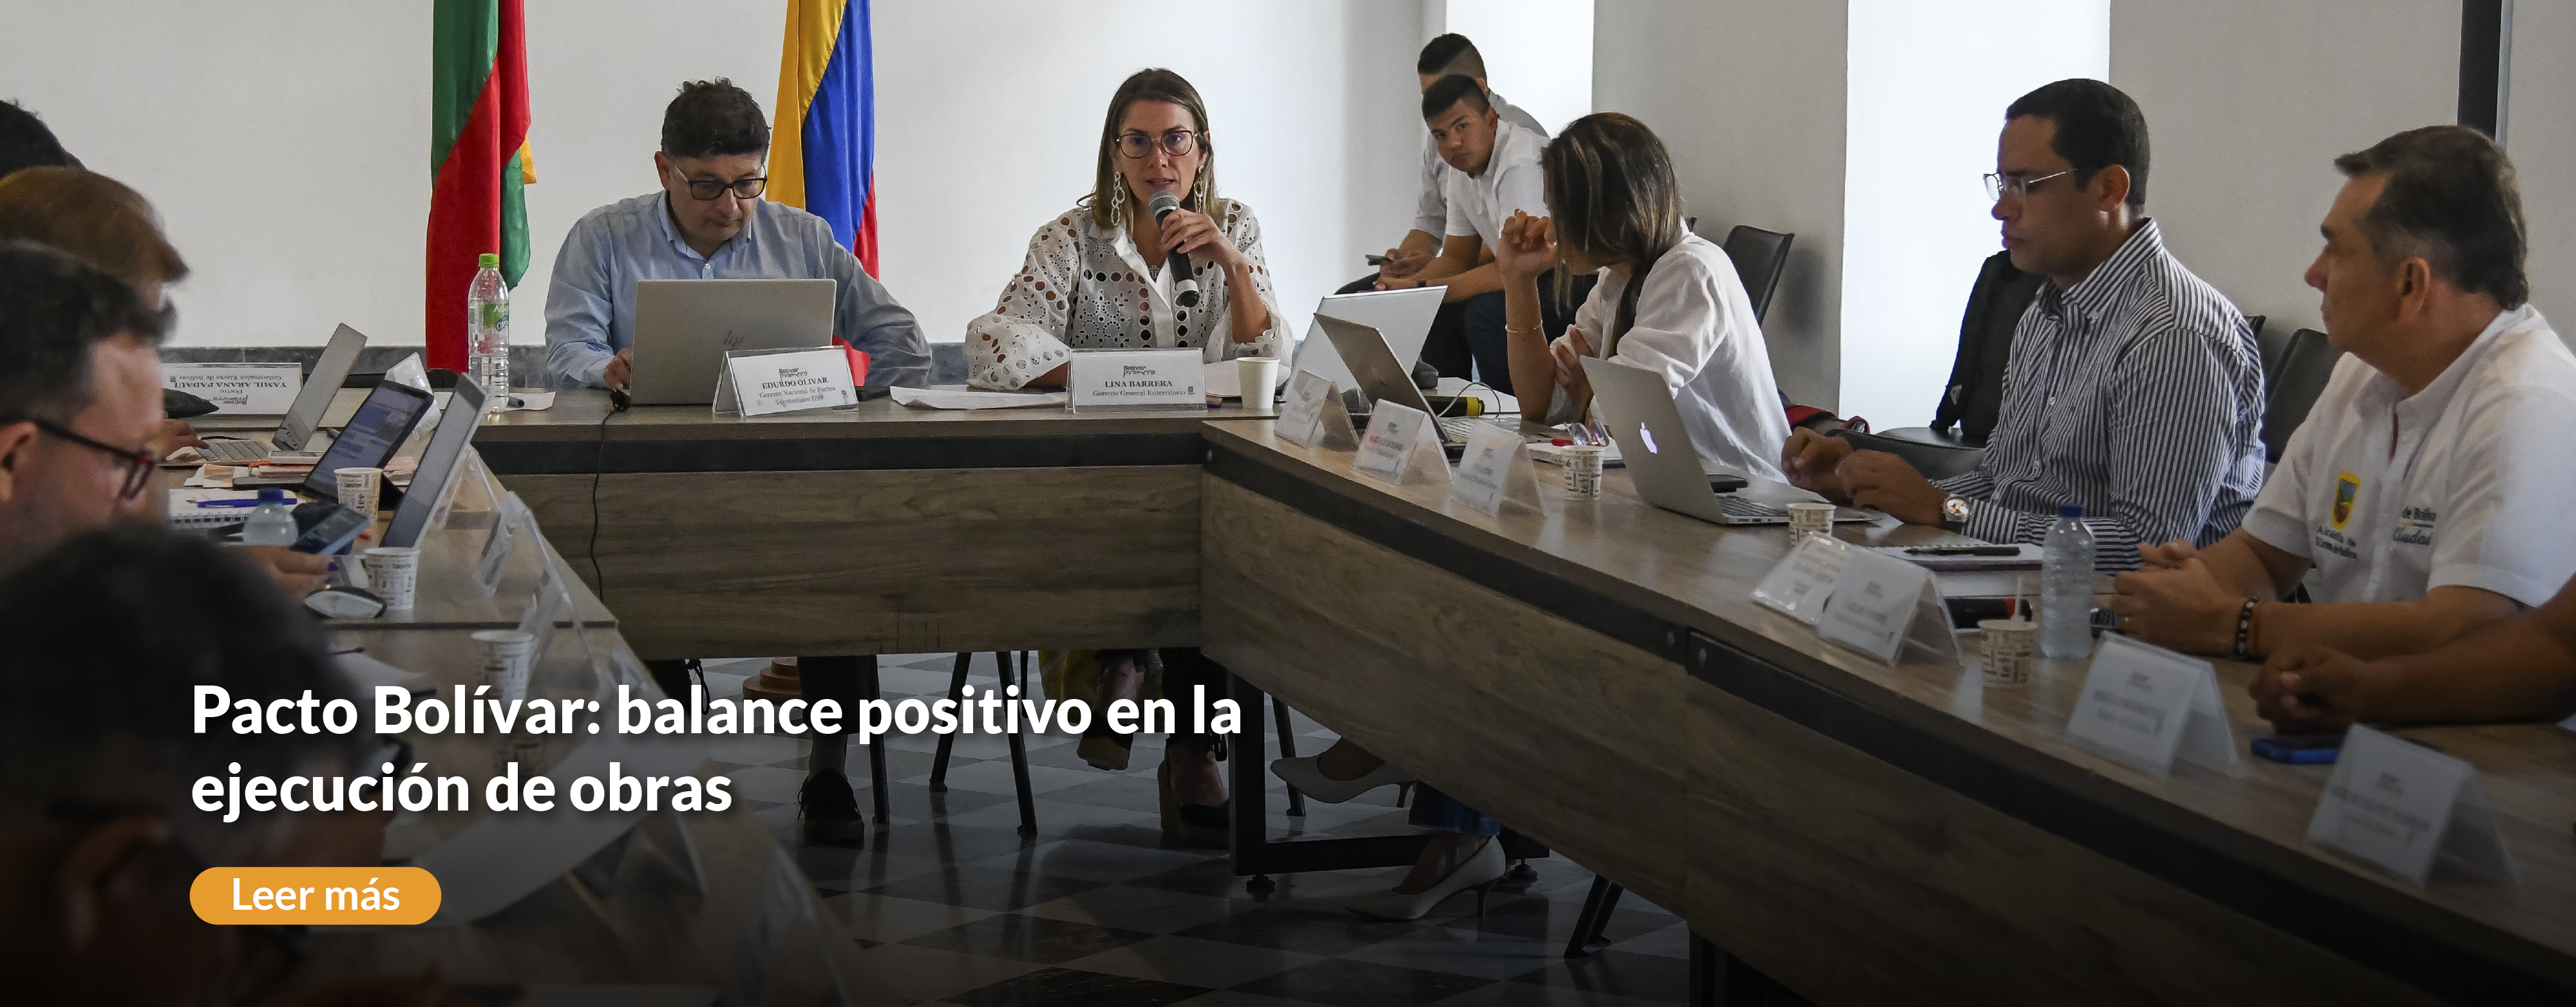 Pacto Bolívar: balance positivo en la ejecución de obras 